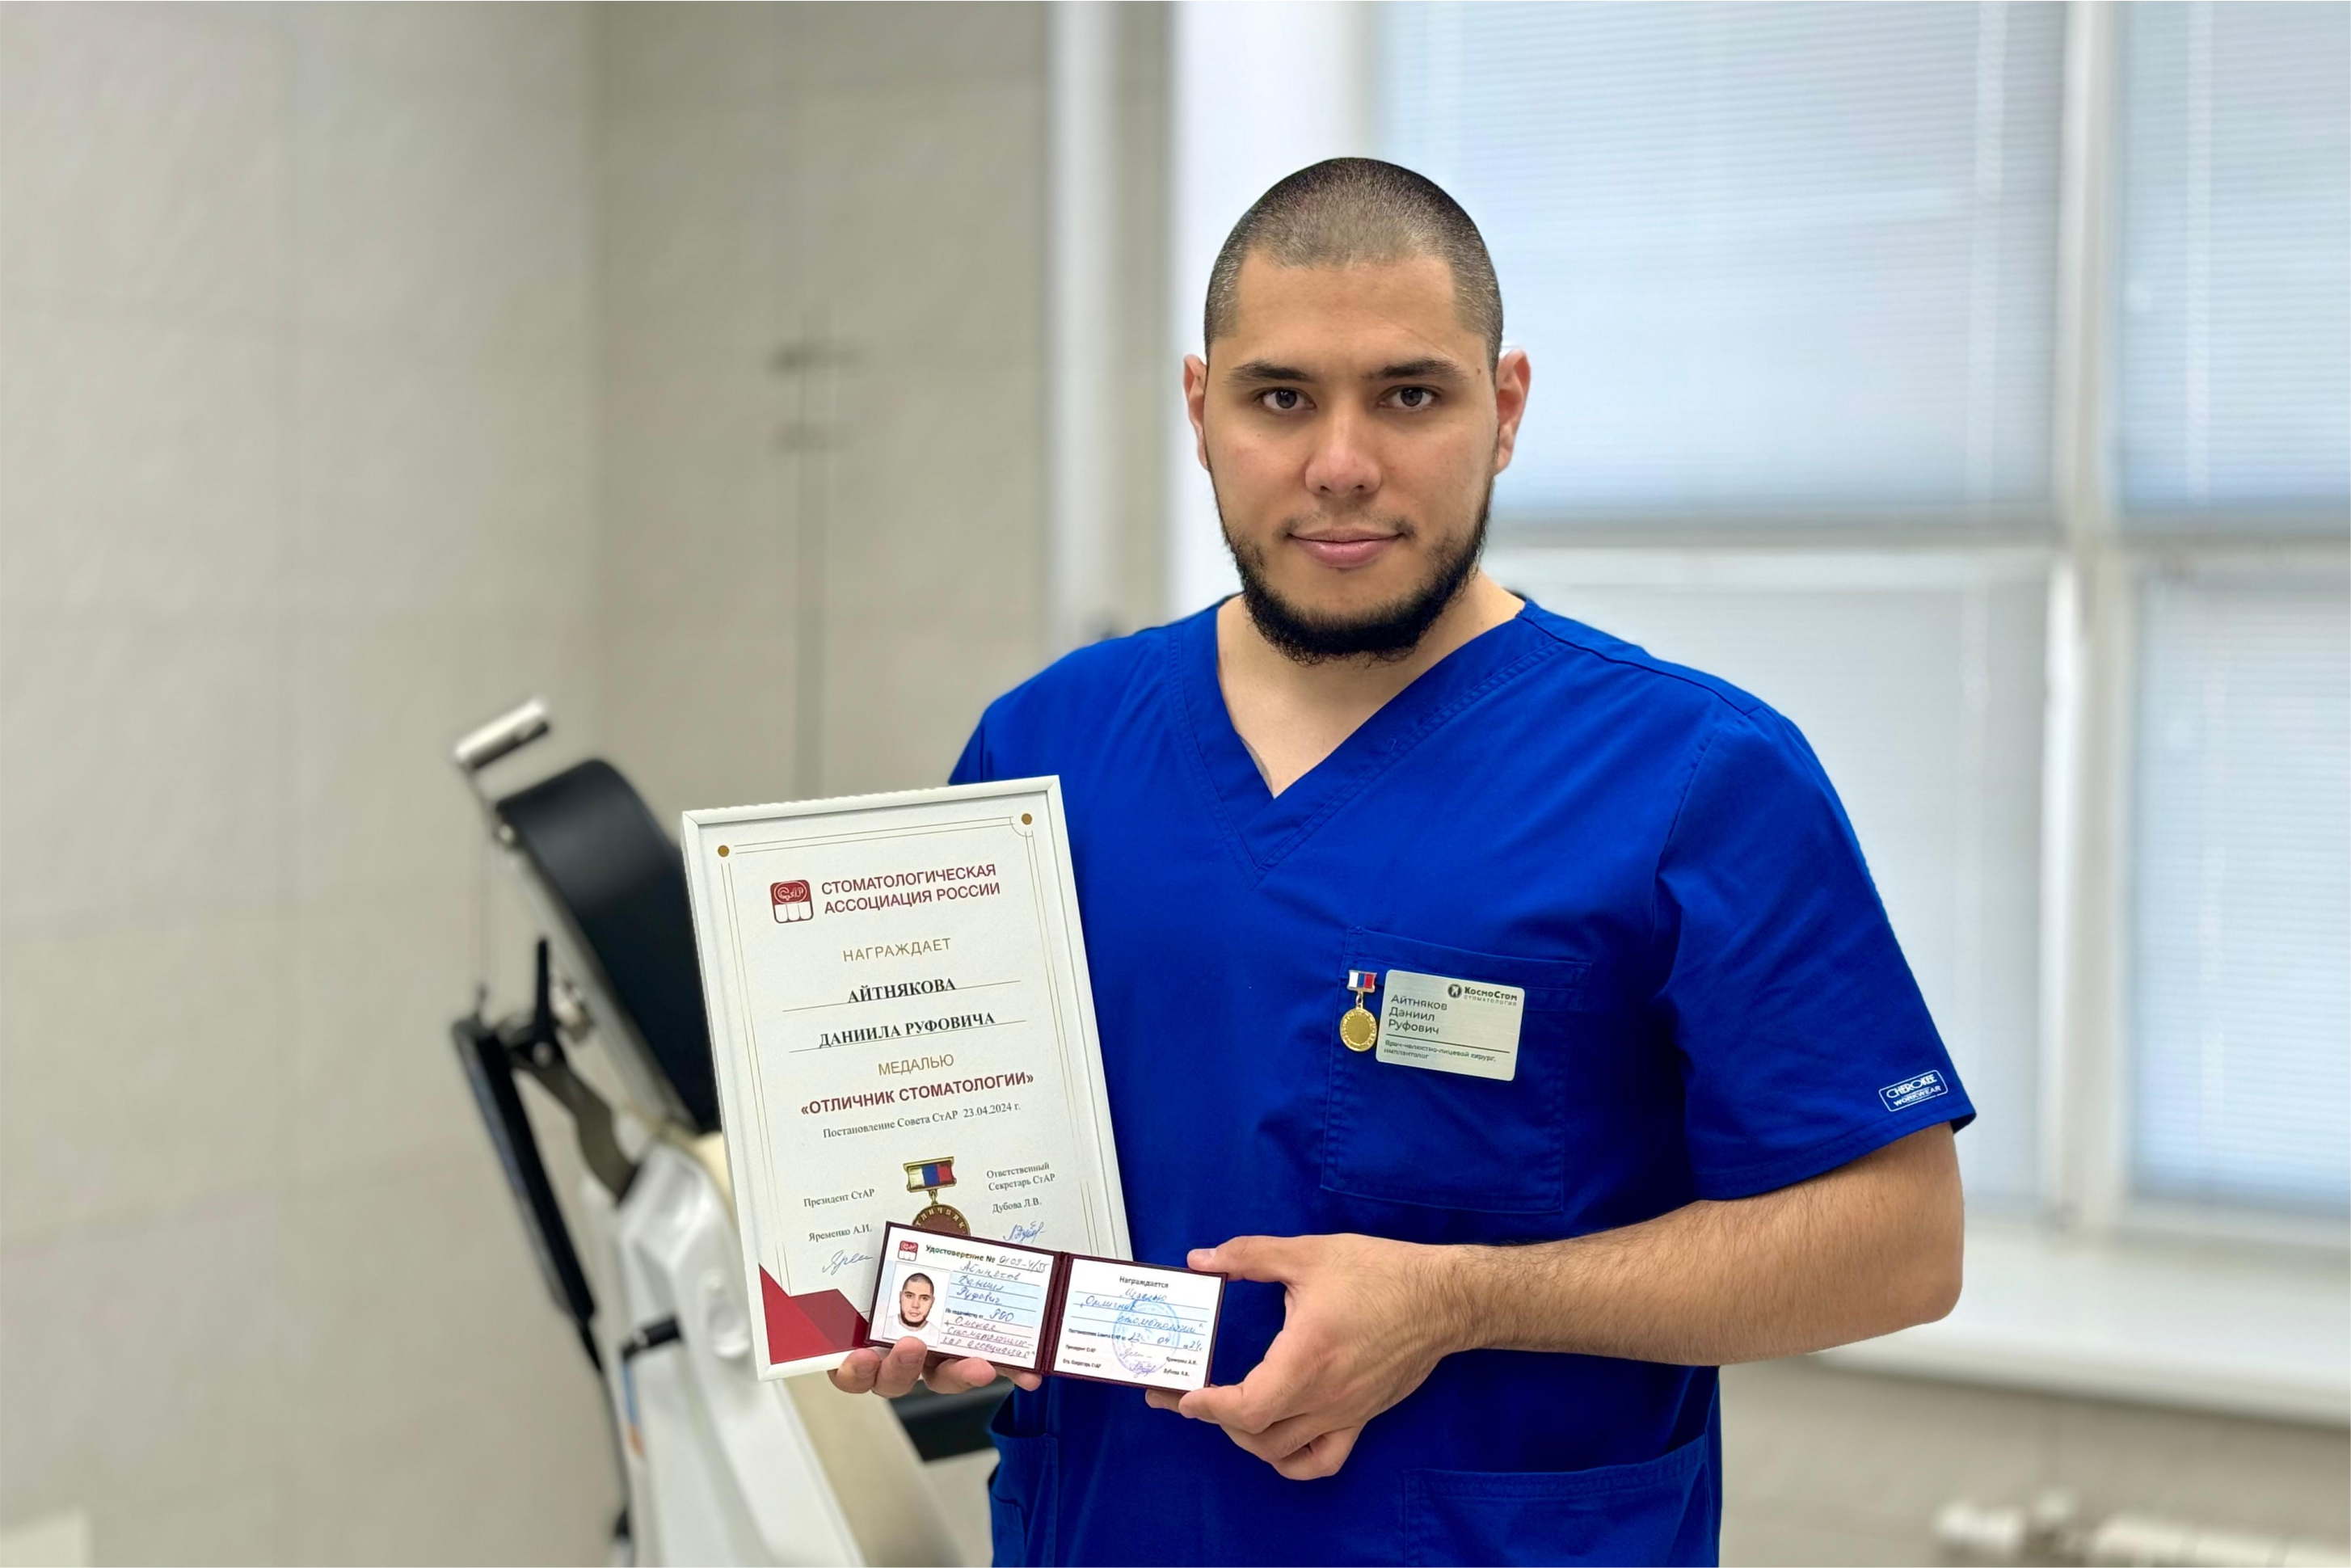 Челюстно-лицевой хирург, имплантолог Айтняков Д.Р. награжден медалью Отличник стоматологии!